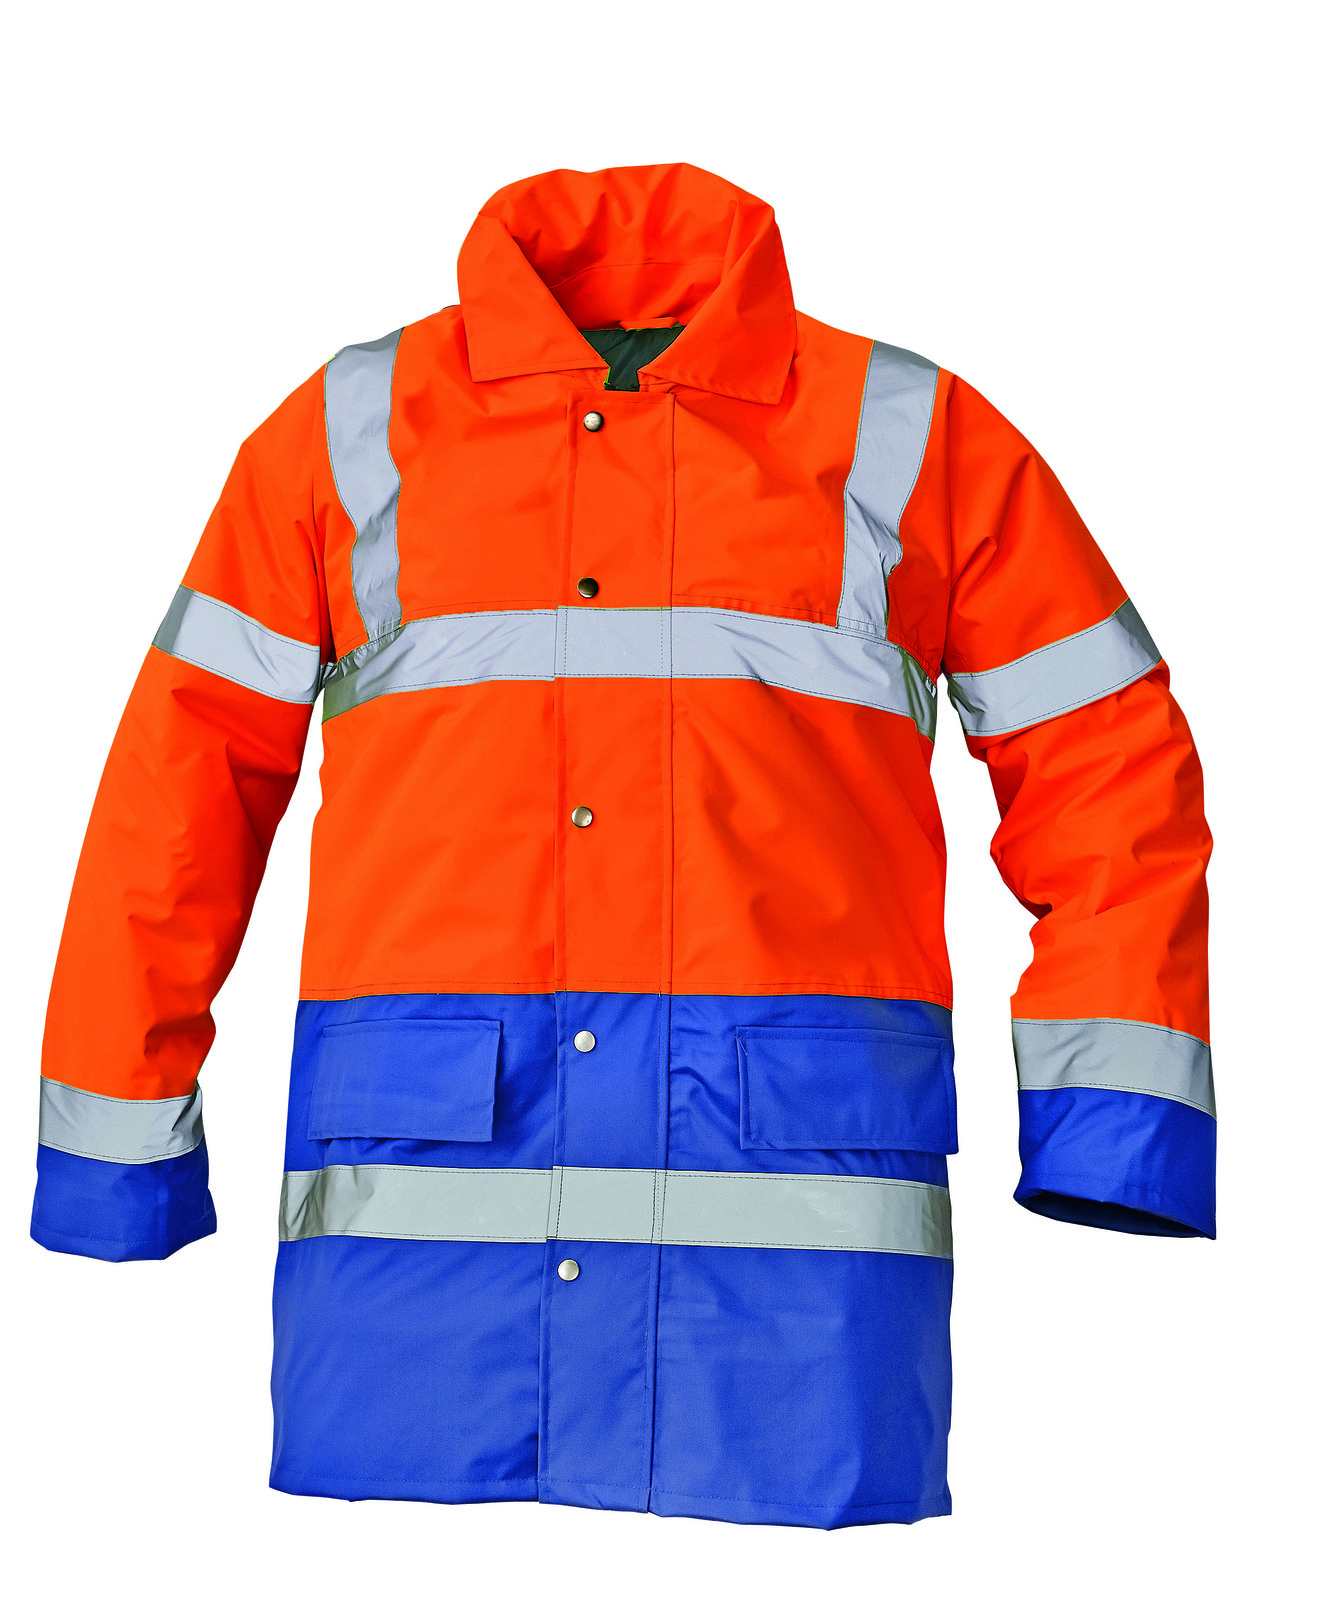 Ľahká zateplená reflexná bunda Sefton - veľkosť: 3XL, farba: oranž/royal